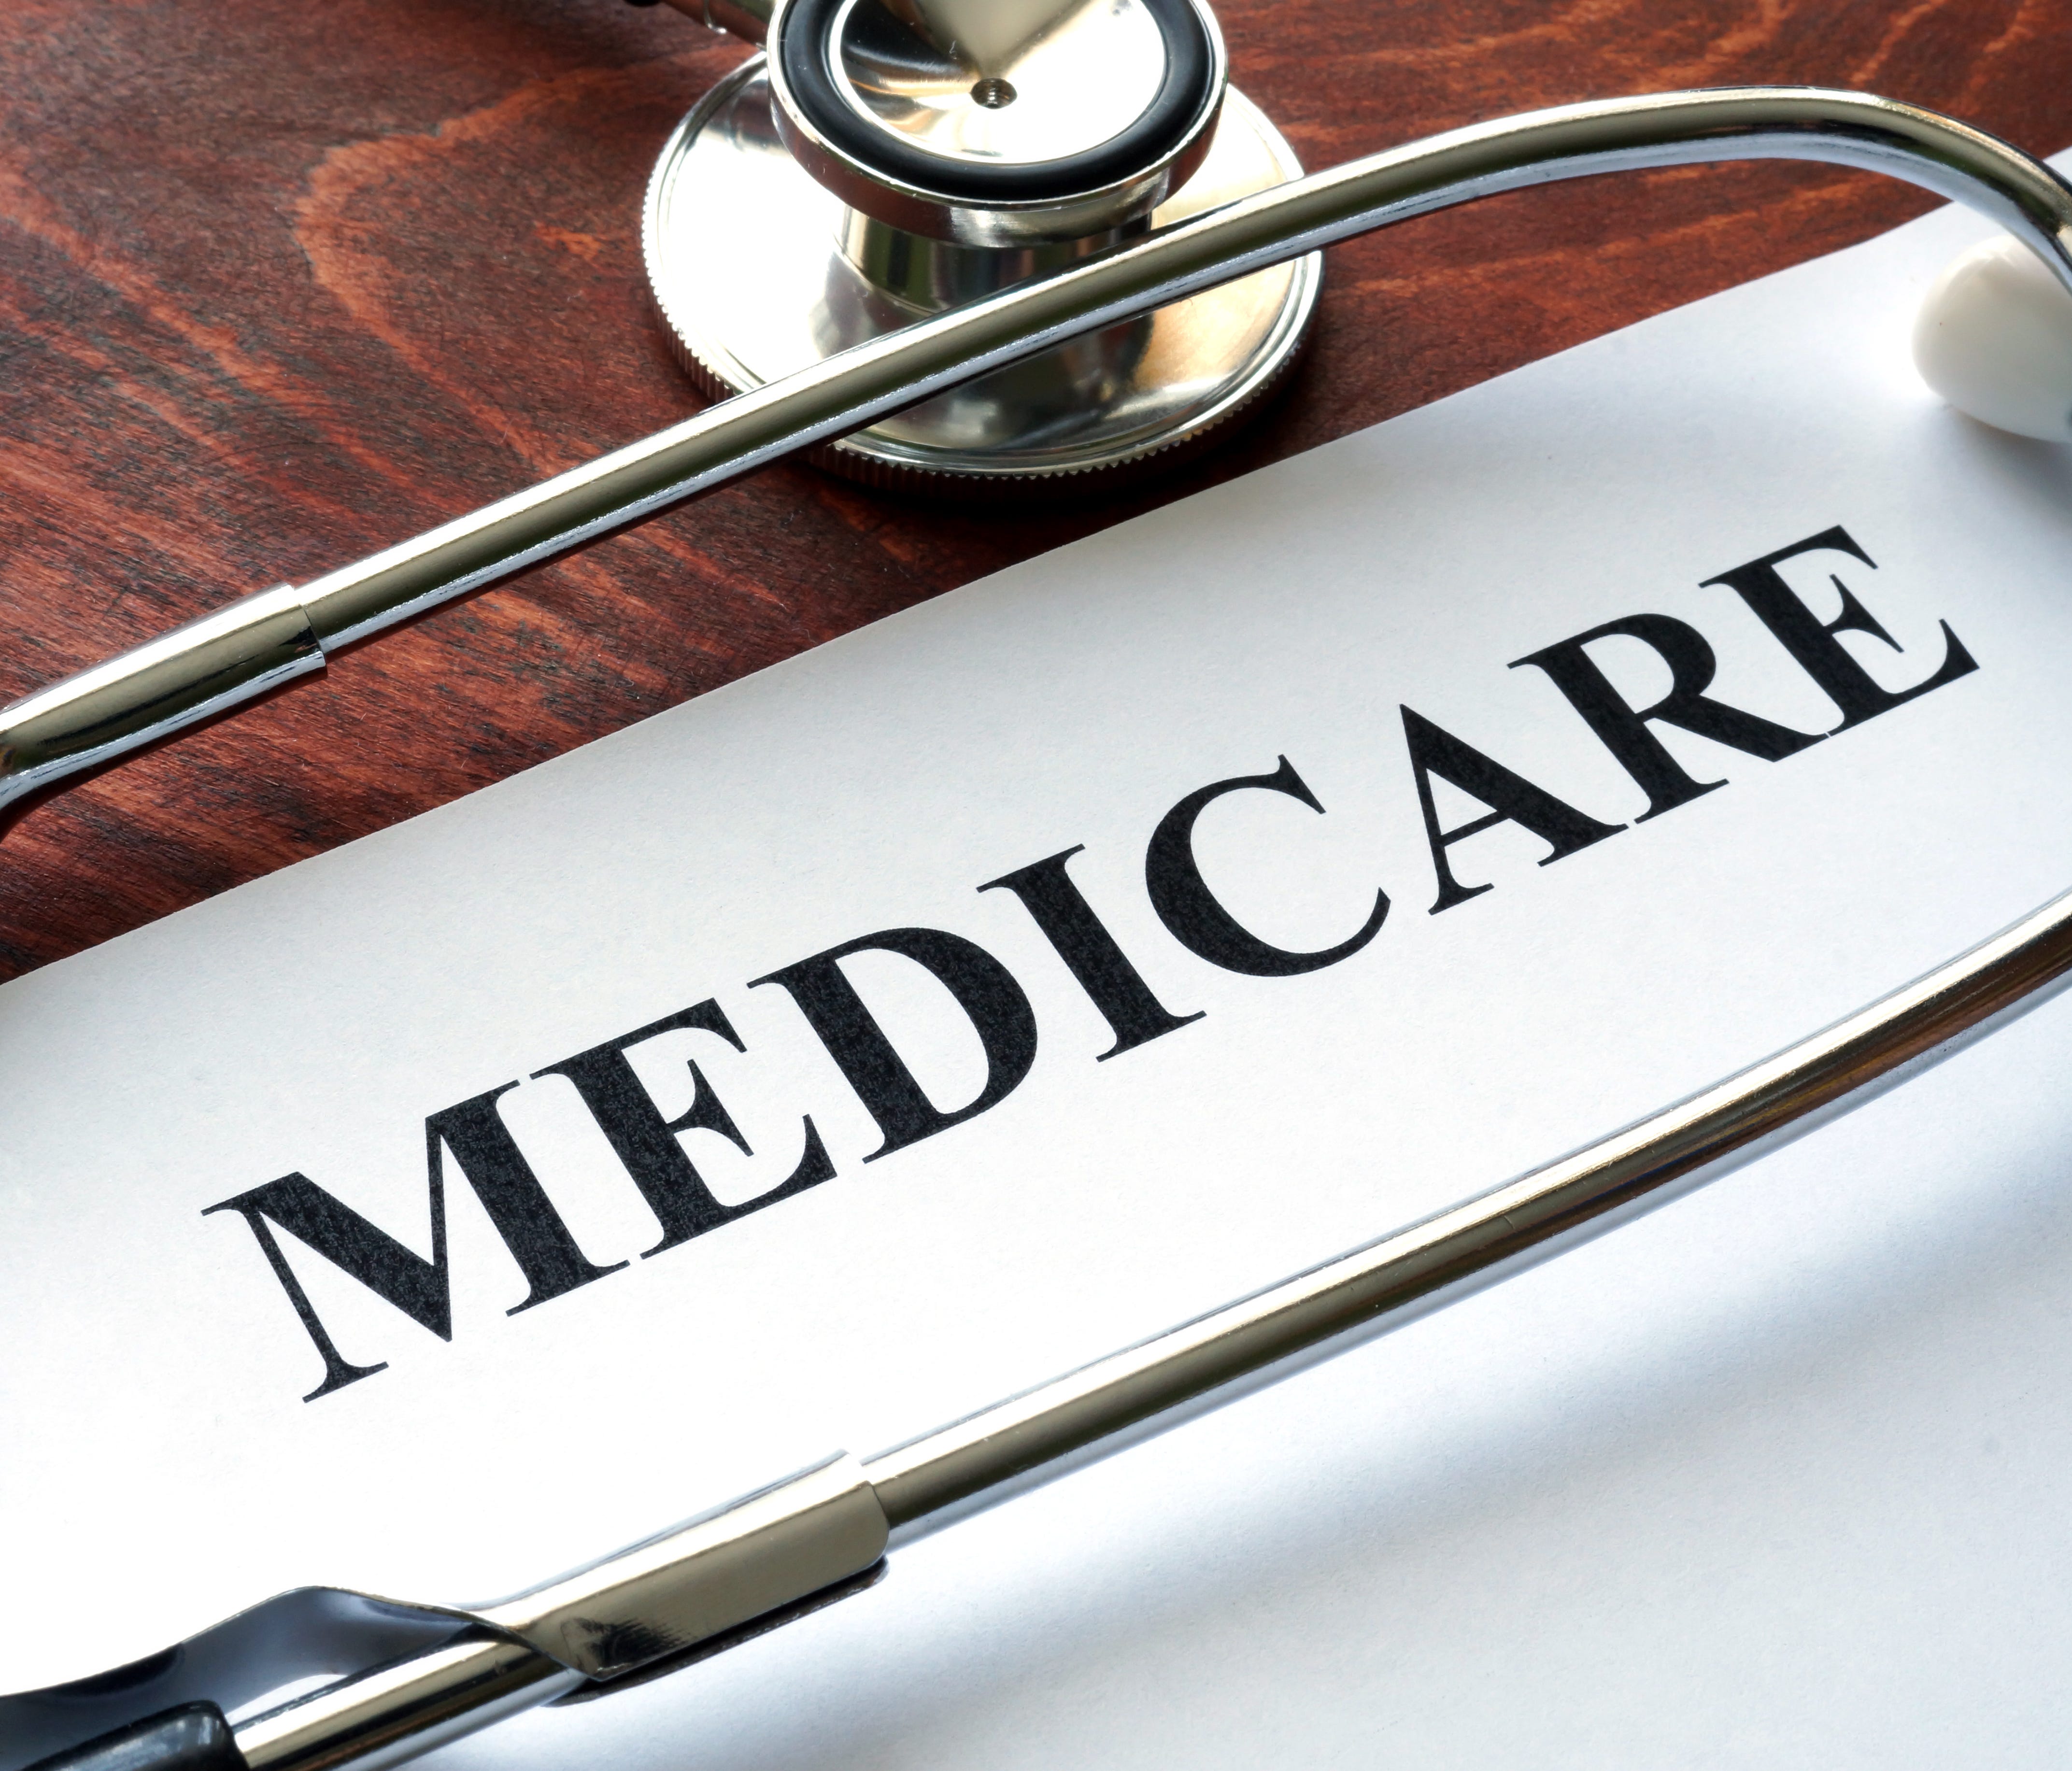 Open enrollment for Medicare begins on Sunday, Oct. 15.